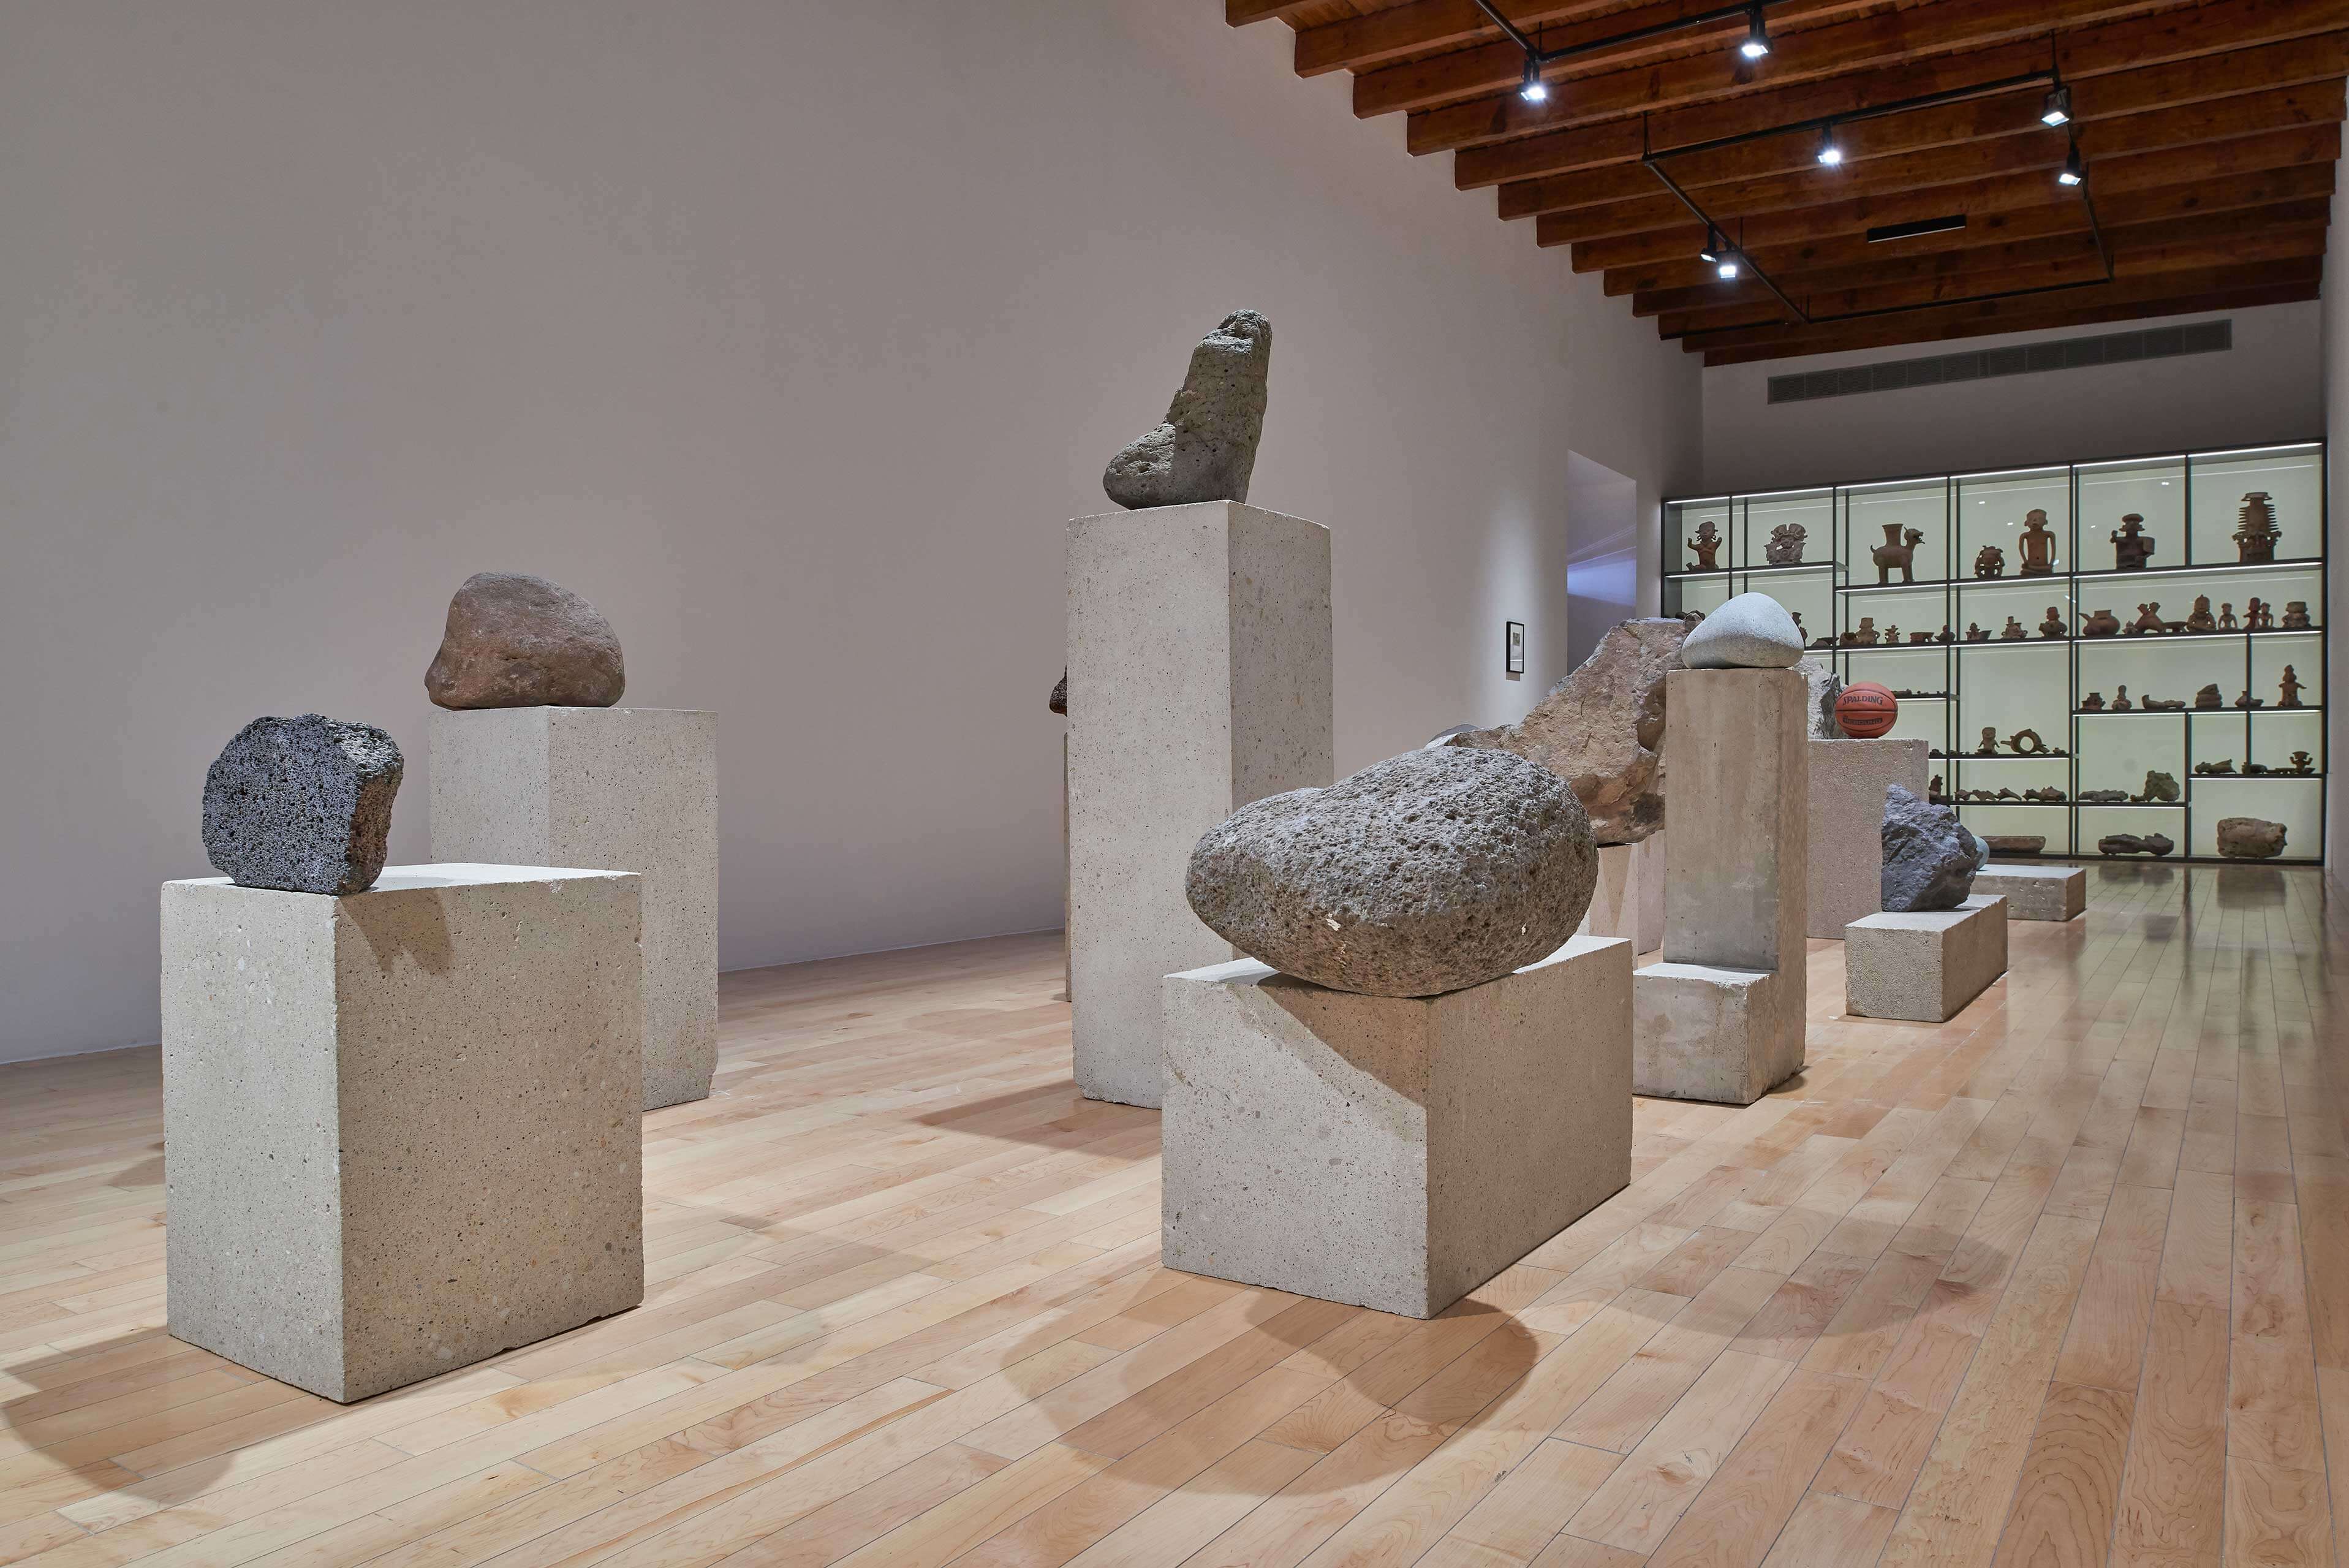 La singularidad tiene algo de irreal | El tiempo en las cosas I. Salas de Arte Contemporáneo | Museo Amparo, Puebla